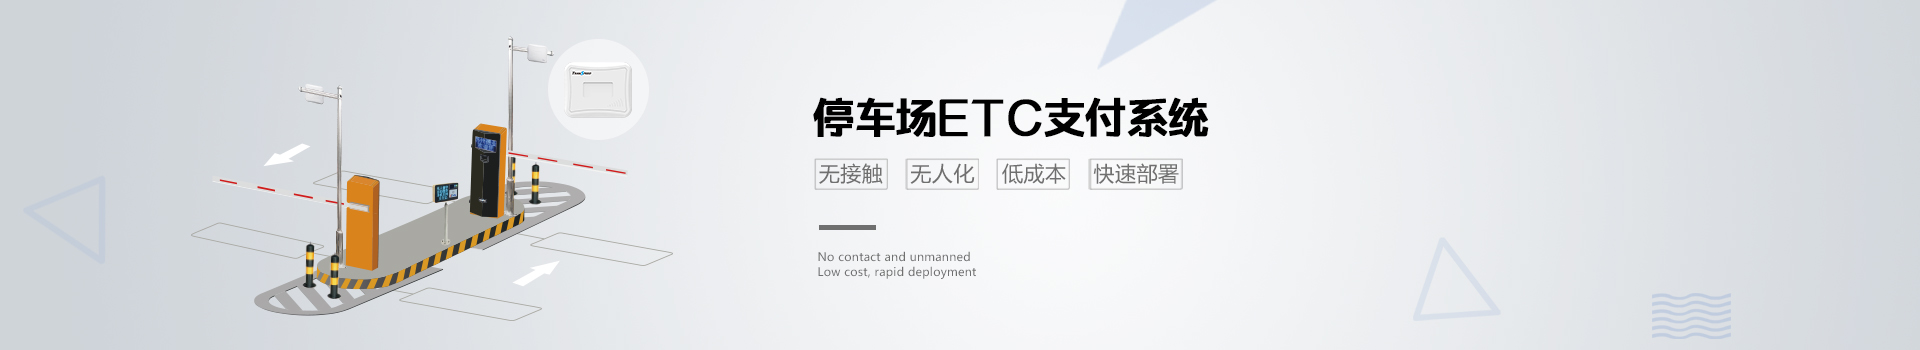 南宁ETC定制-价格-供应商